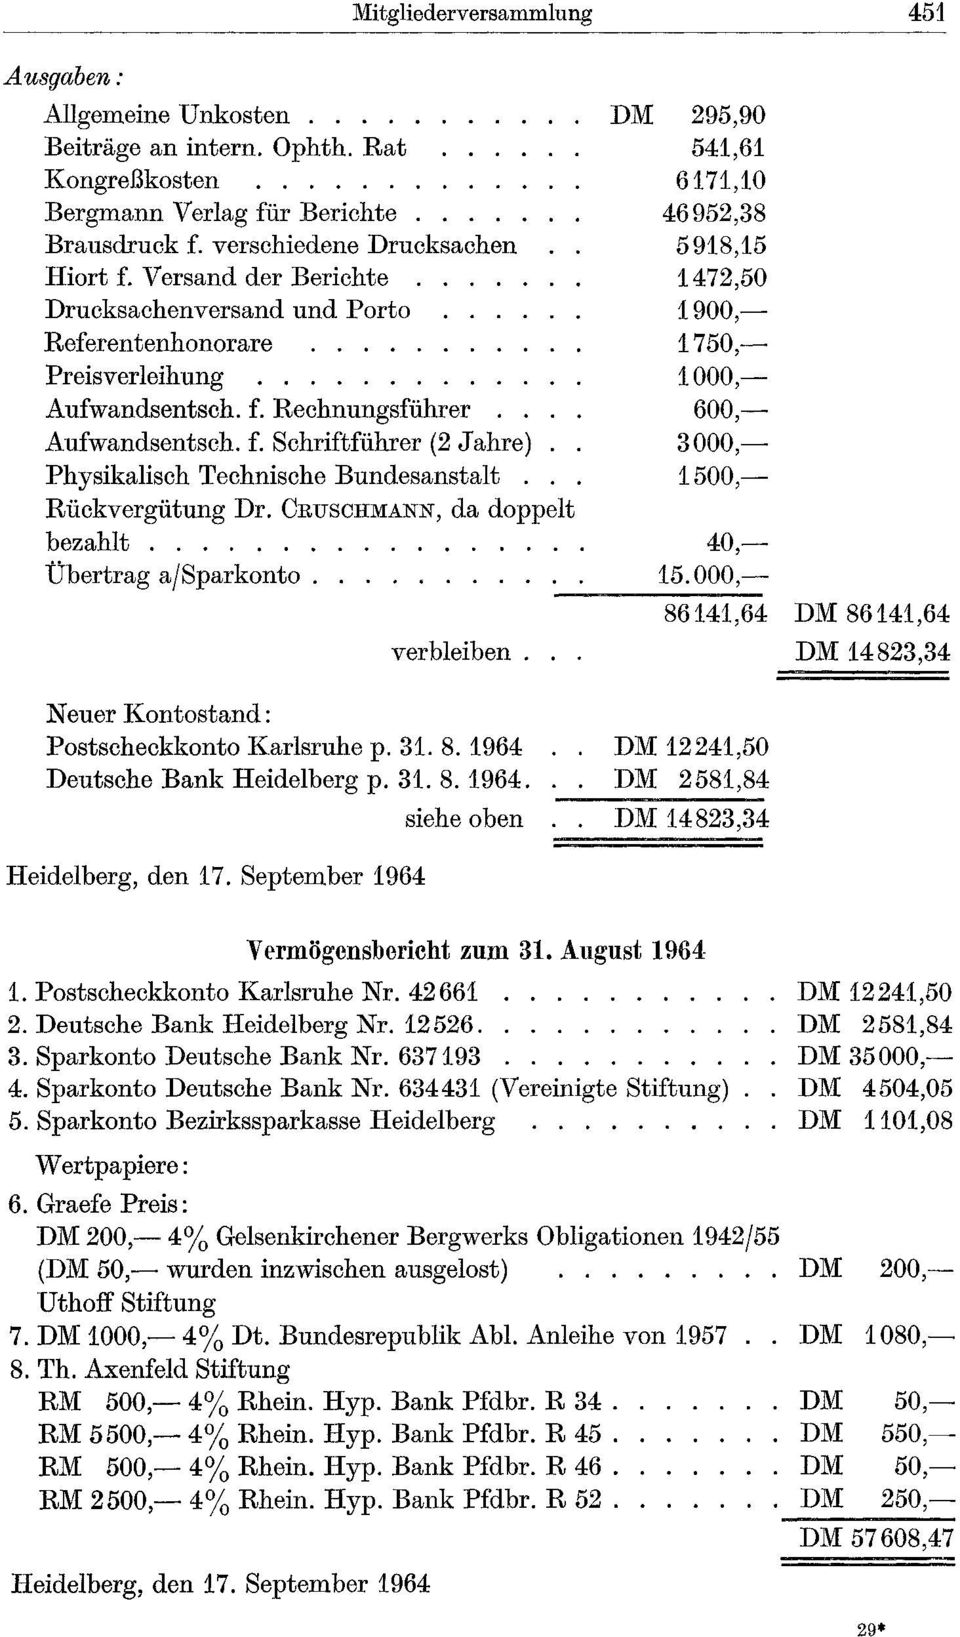 Rückvergütung Dr. CRUSCHMANN, da doppelt bezahlt....... Übertrag ajsparkonto......... verbleiben. Neuer Kontostand: Postscheckkonto Karlsruhe p. 31. 8. 1964 